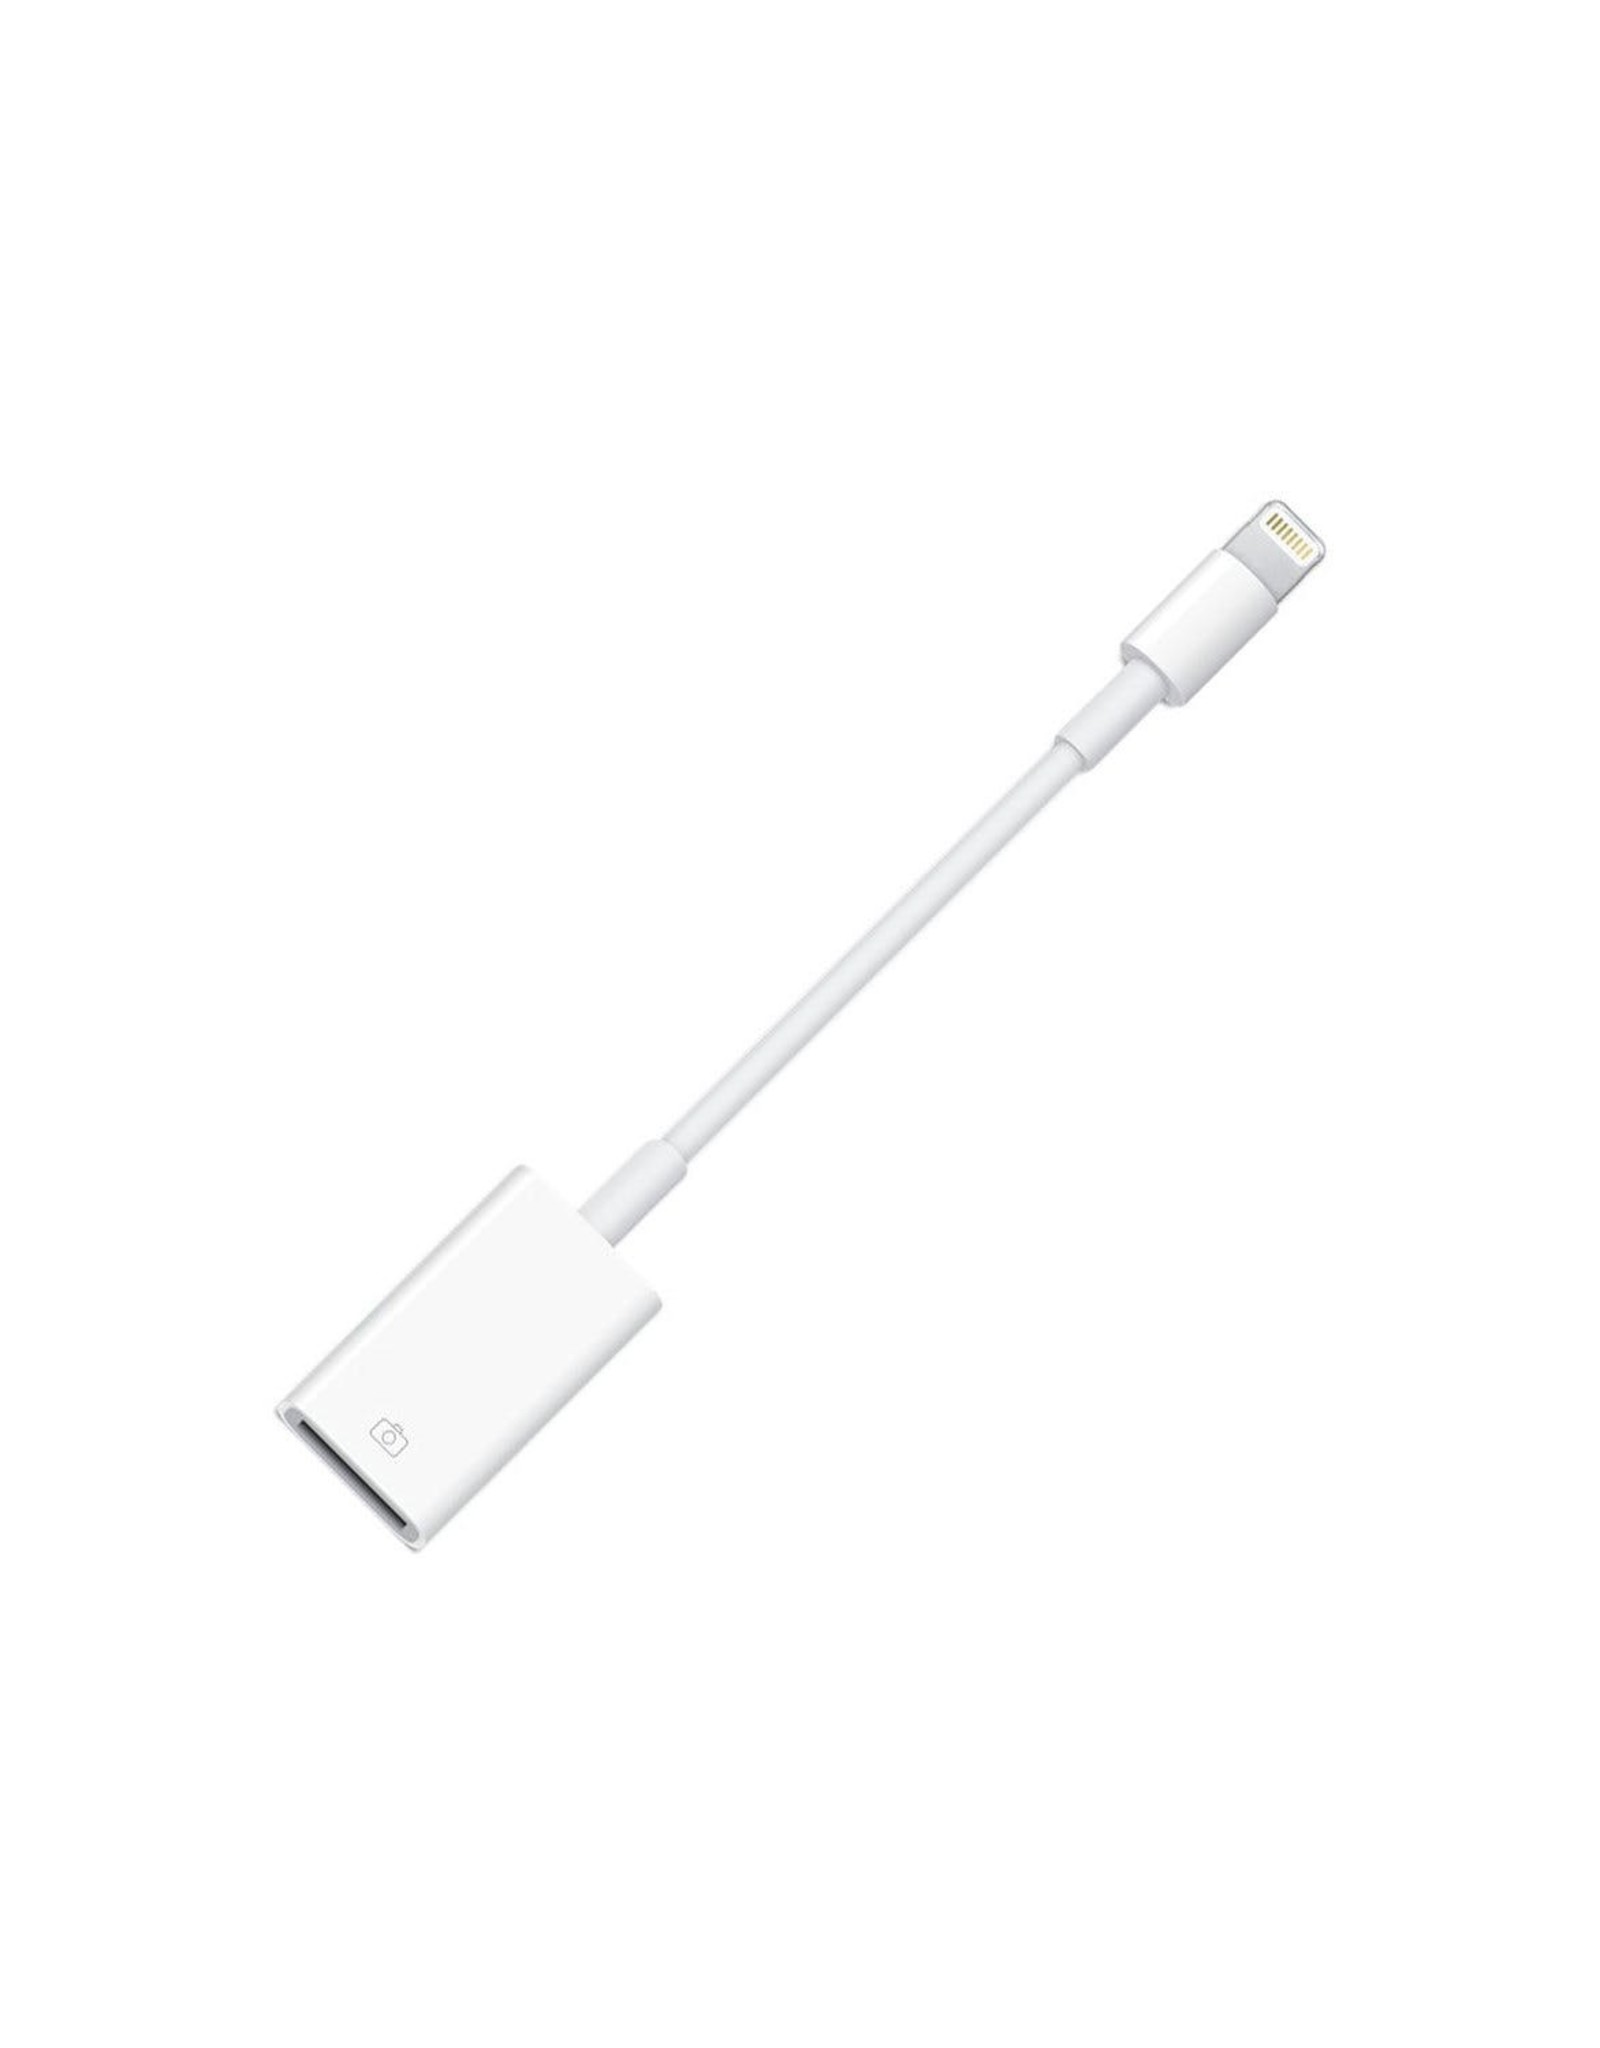 Apple Lightning-to-USB Camera Adapter